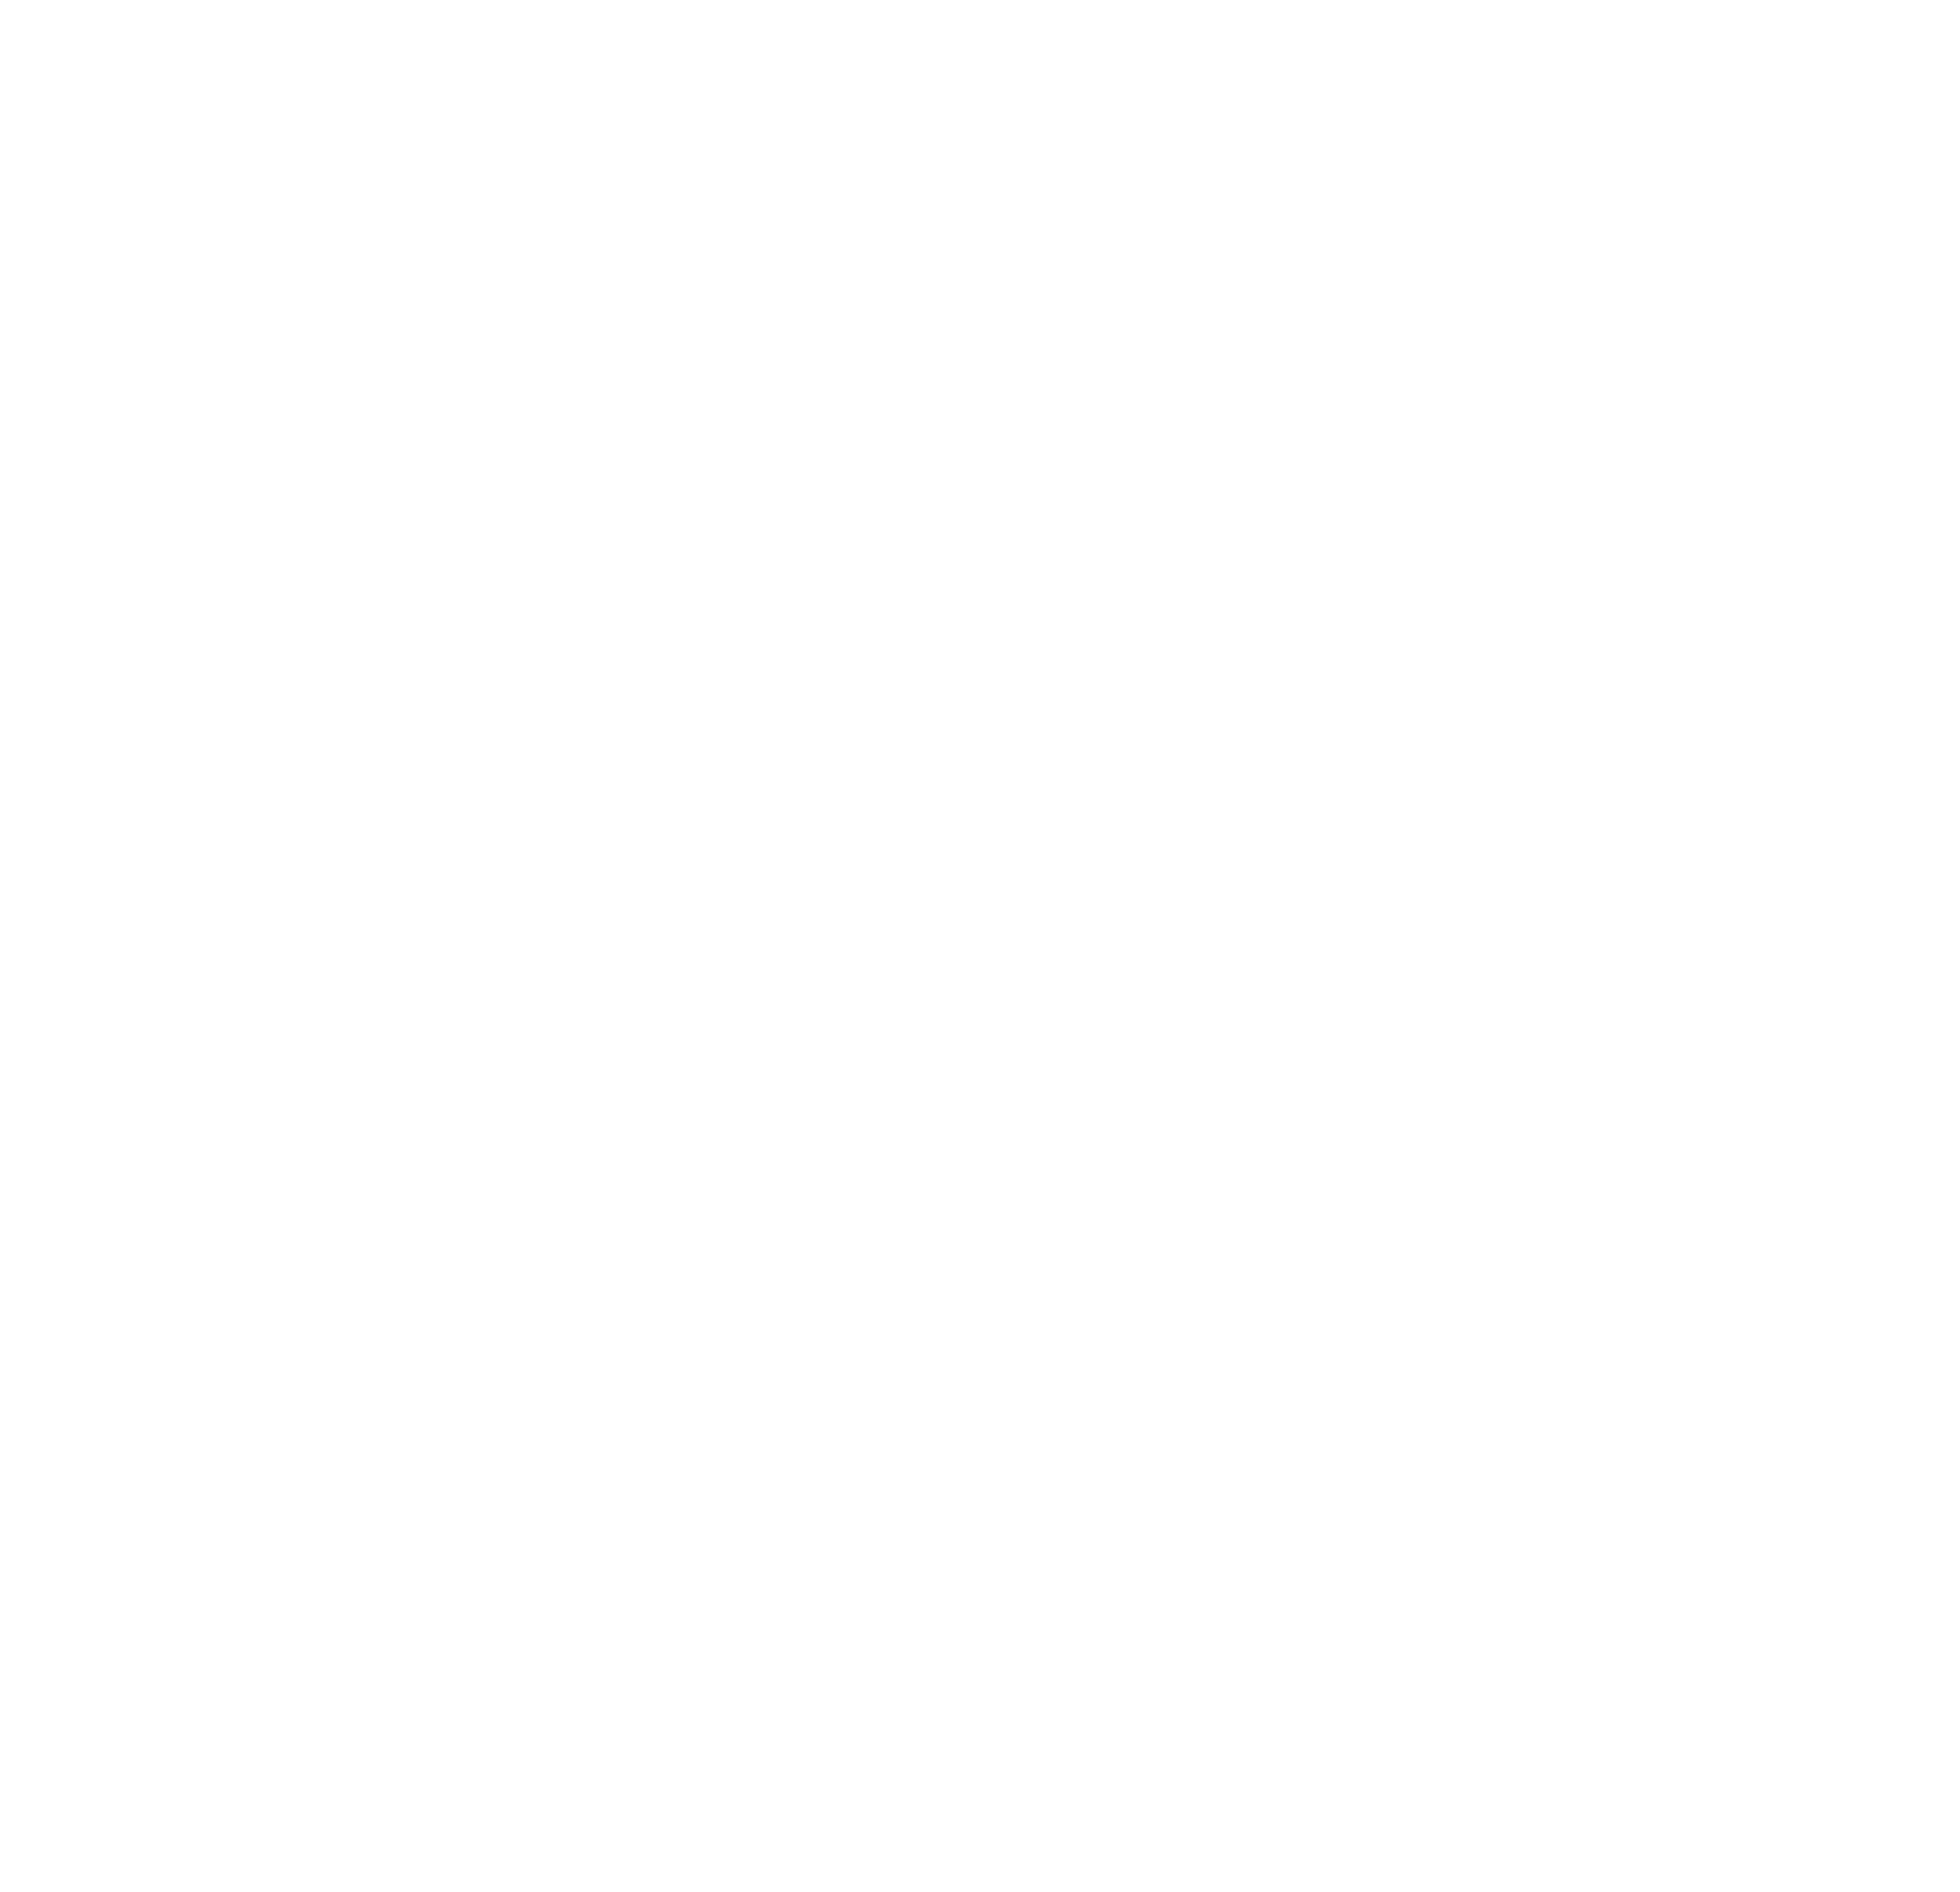 adidas original symbol